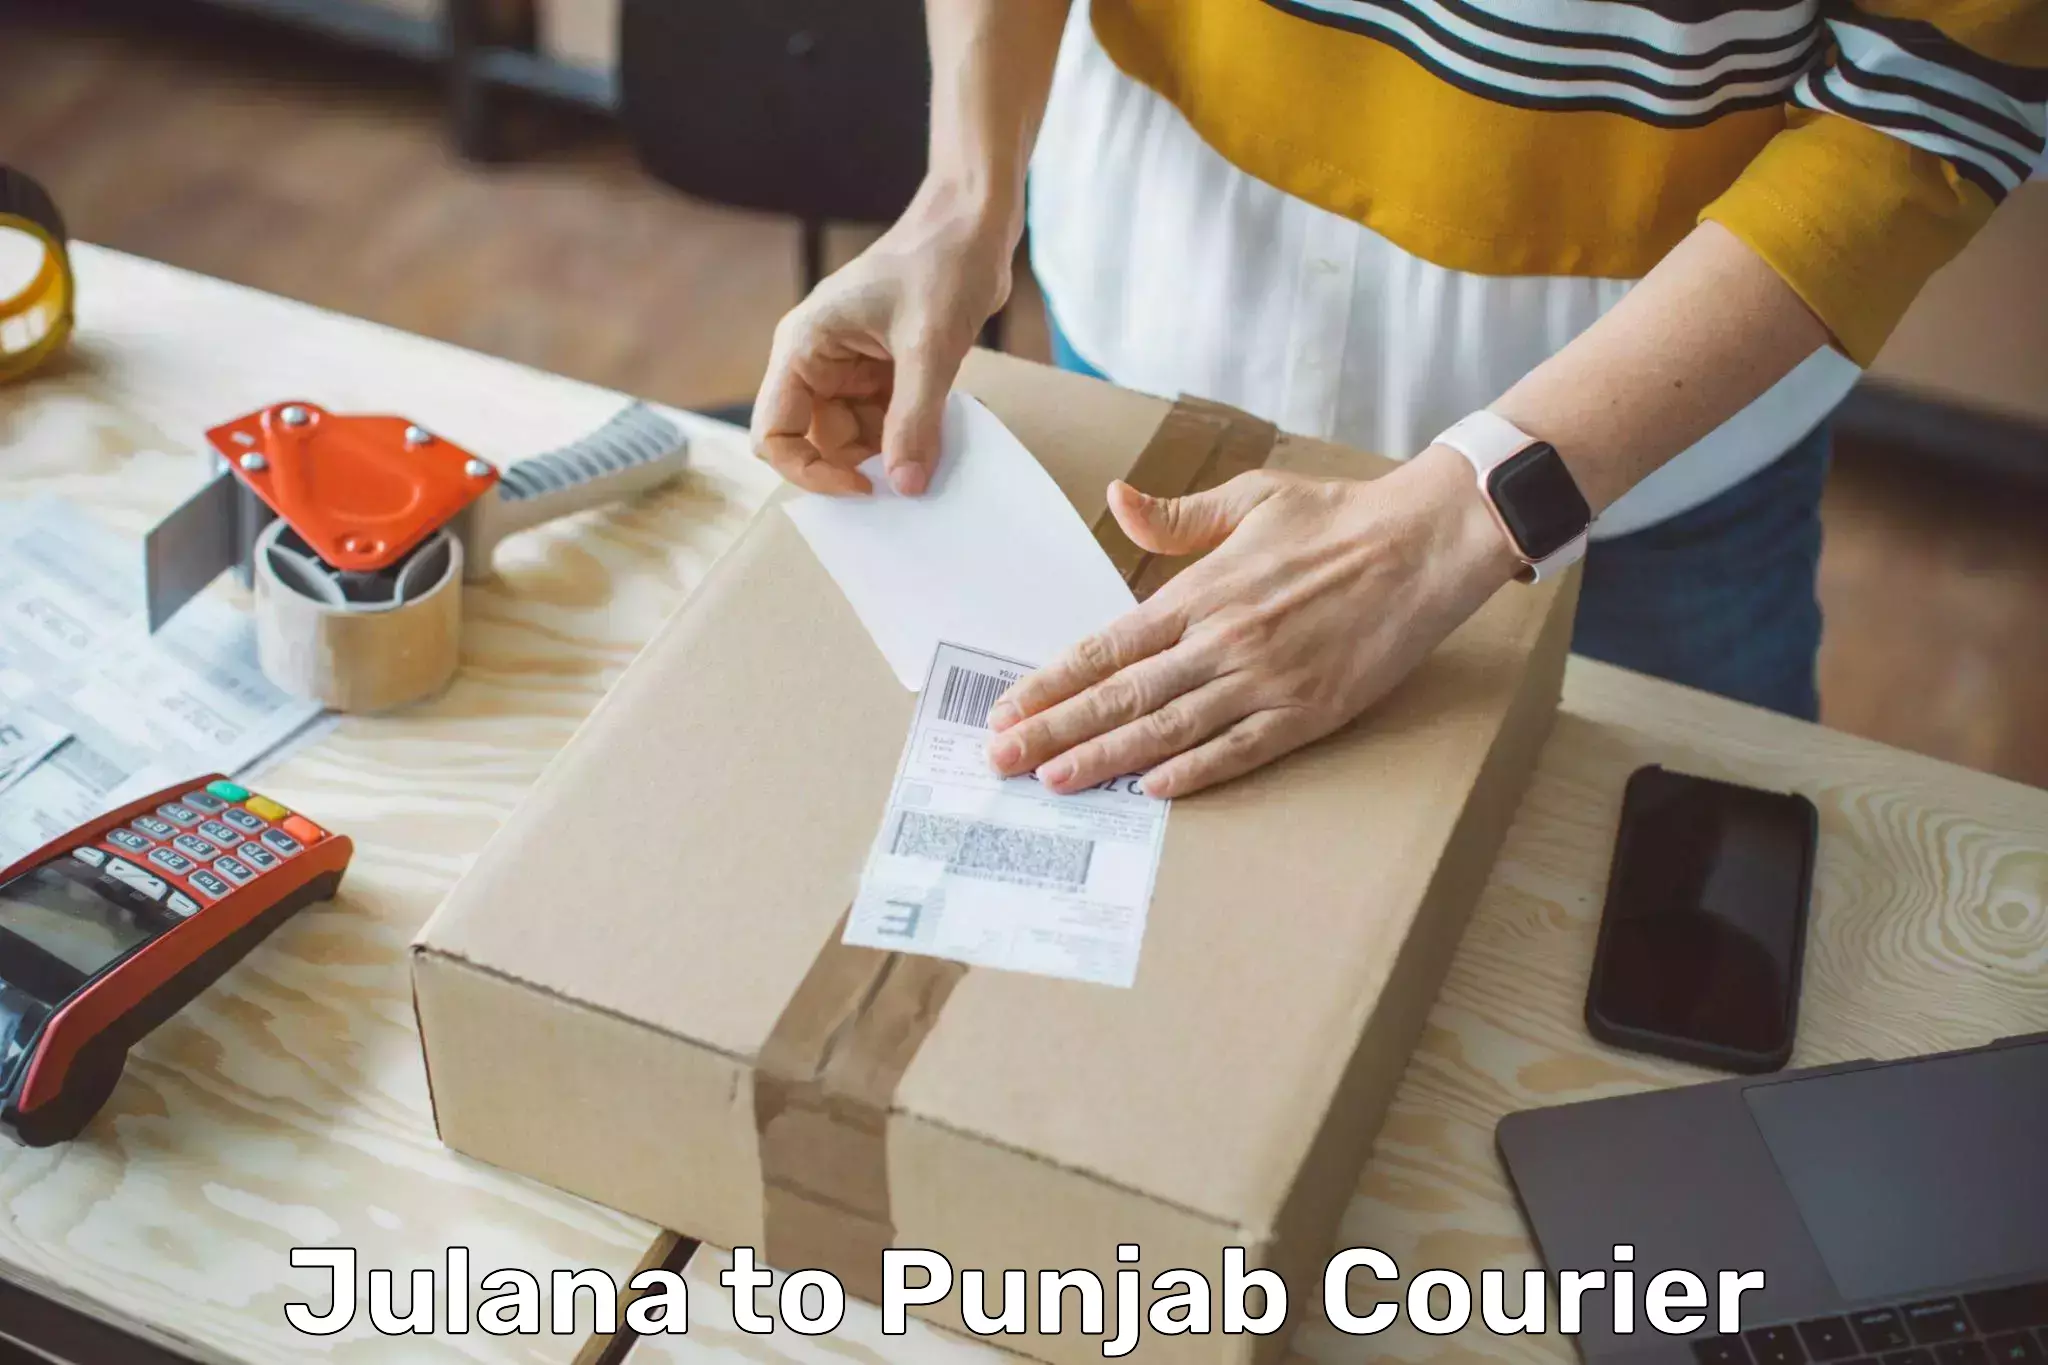 Smart shipping technology Julana to Central University of Punjab Bathinda